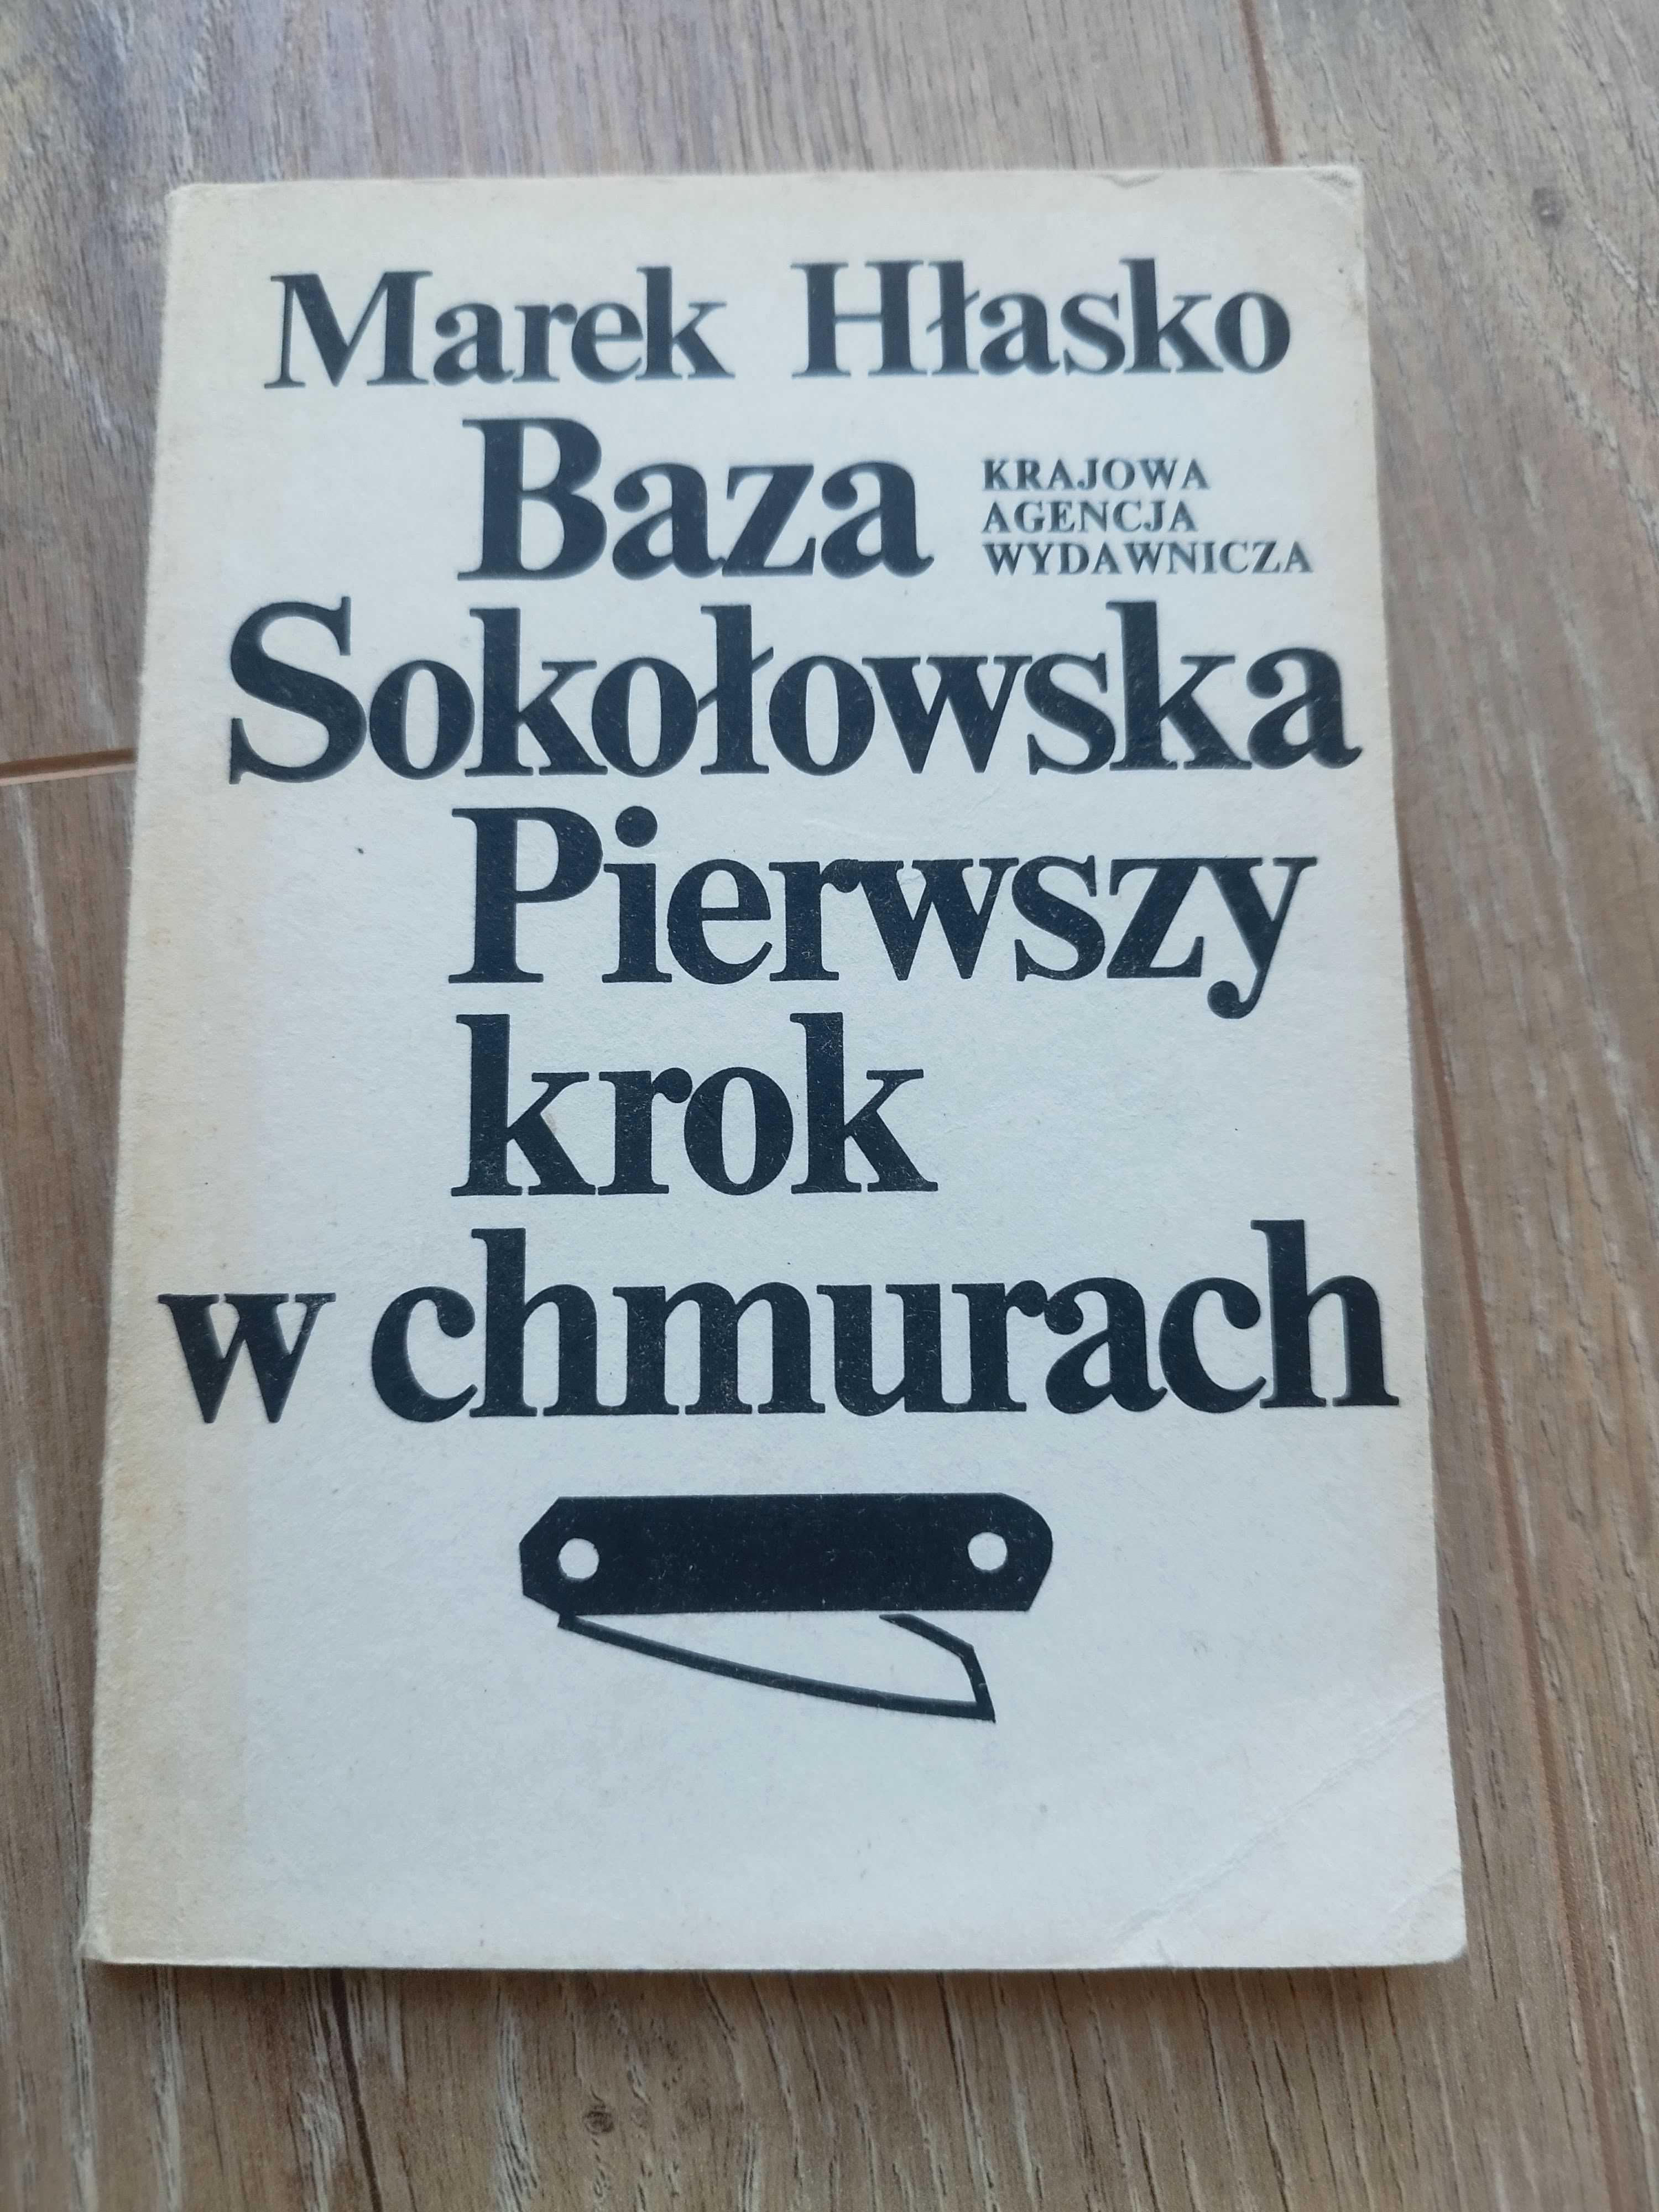 Baza Sokołowska Pierwszy krok w chmurach Marek Hłasko